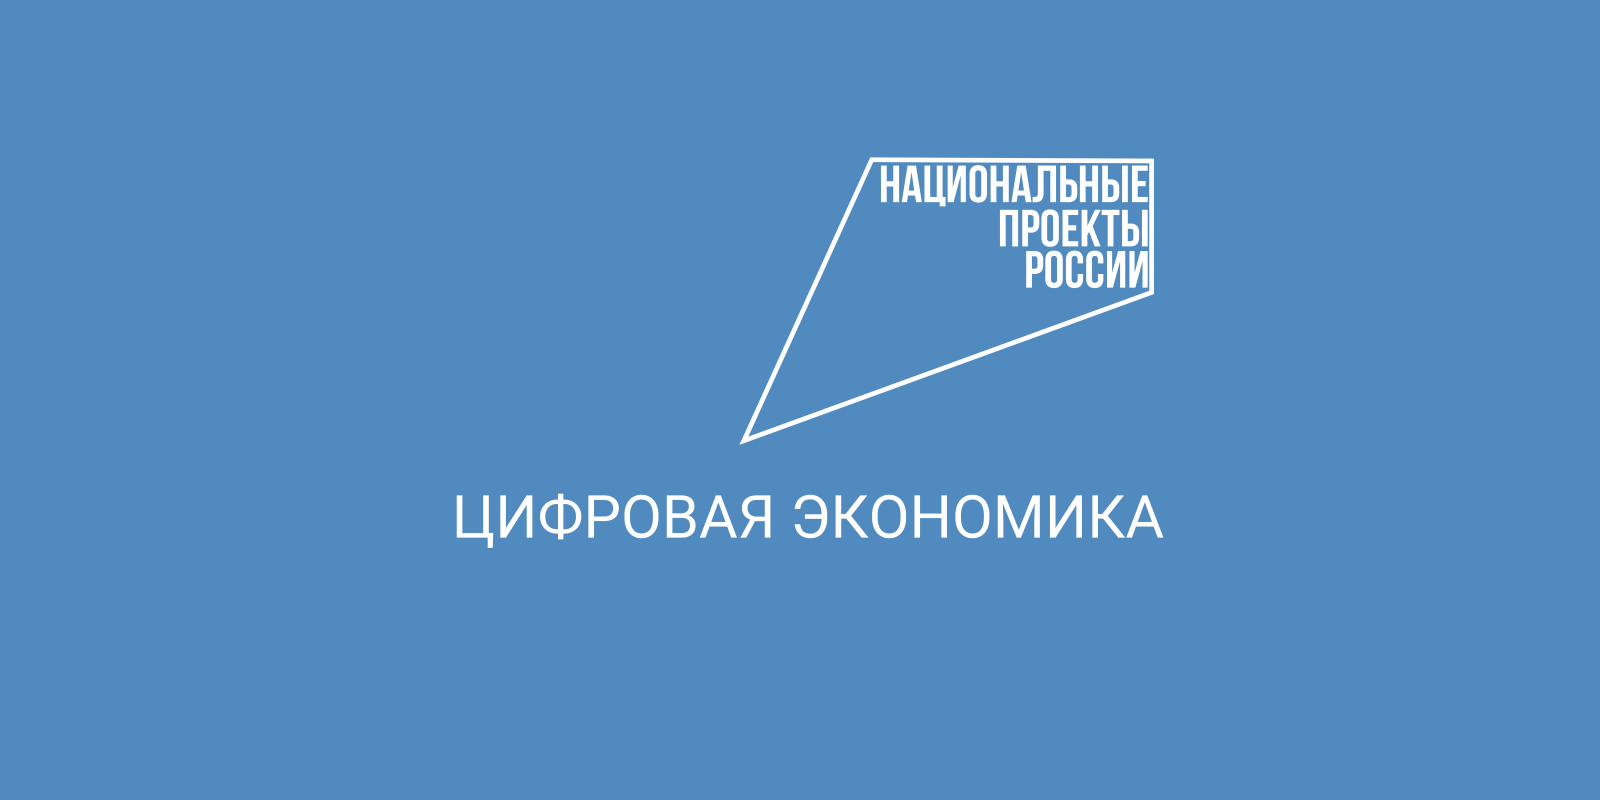 Более 2 800 заявлений подали абитуриенты на ИТ-направления подготовки в вузы Вологодской области.